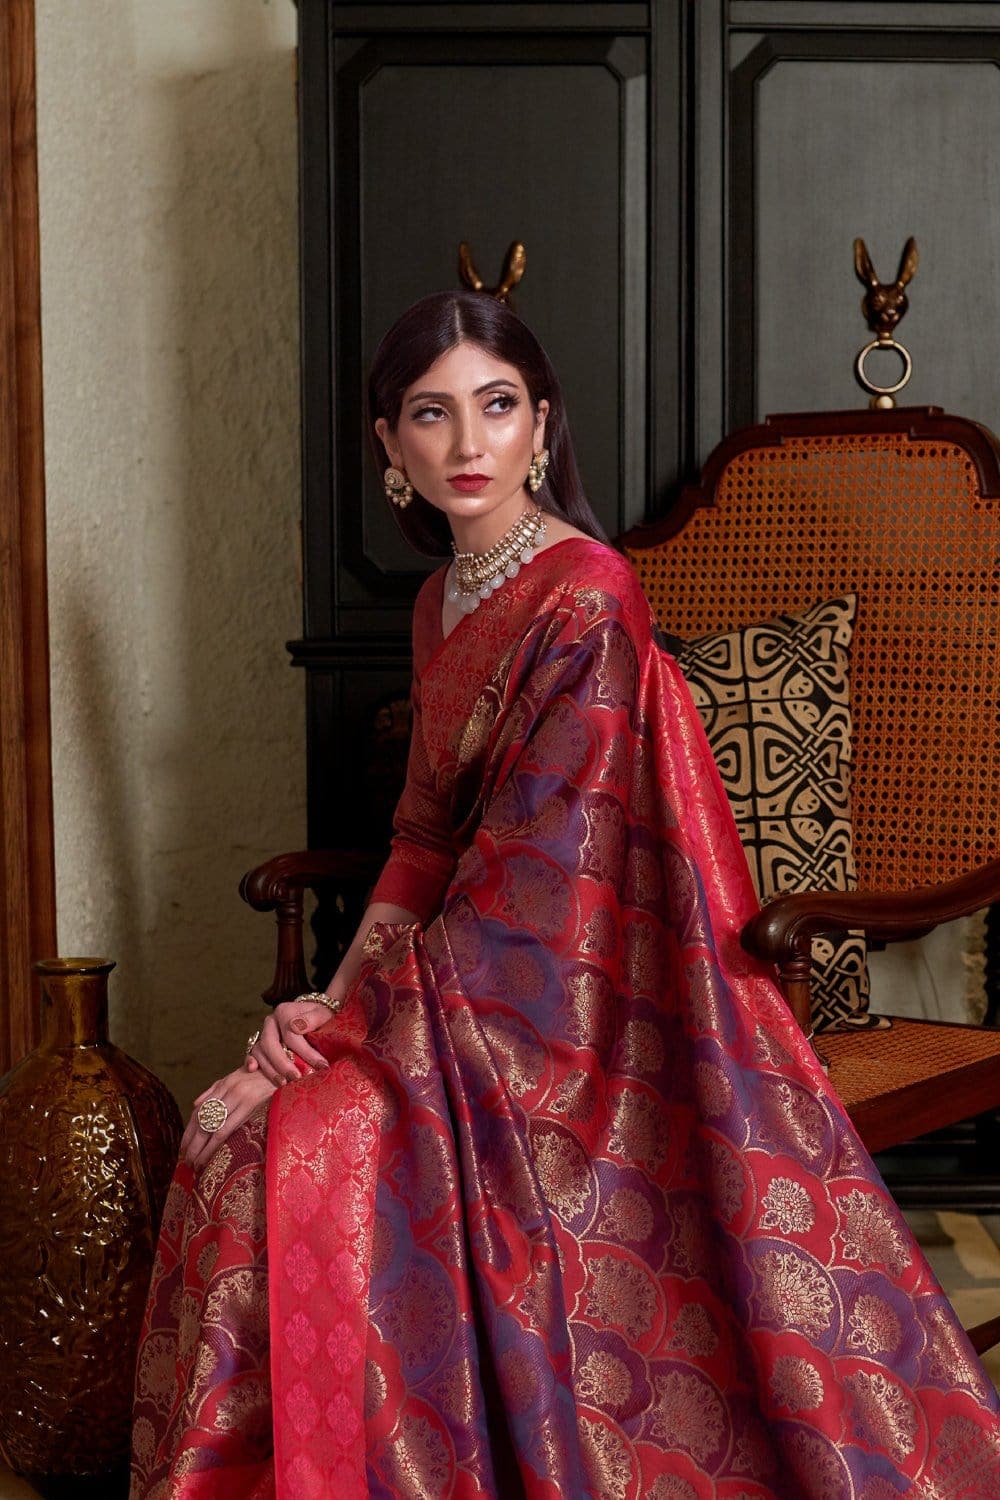 Buy Red violet banarasi saree online at best price - Karagiri